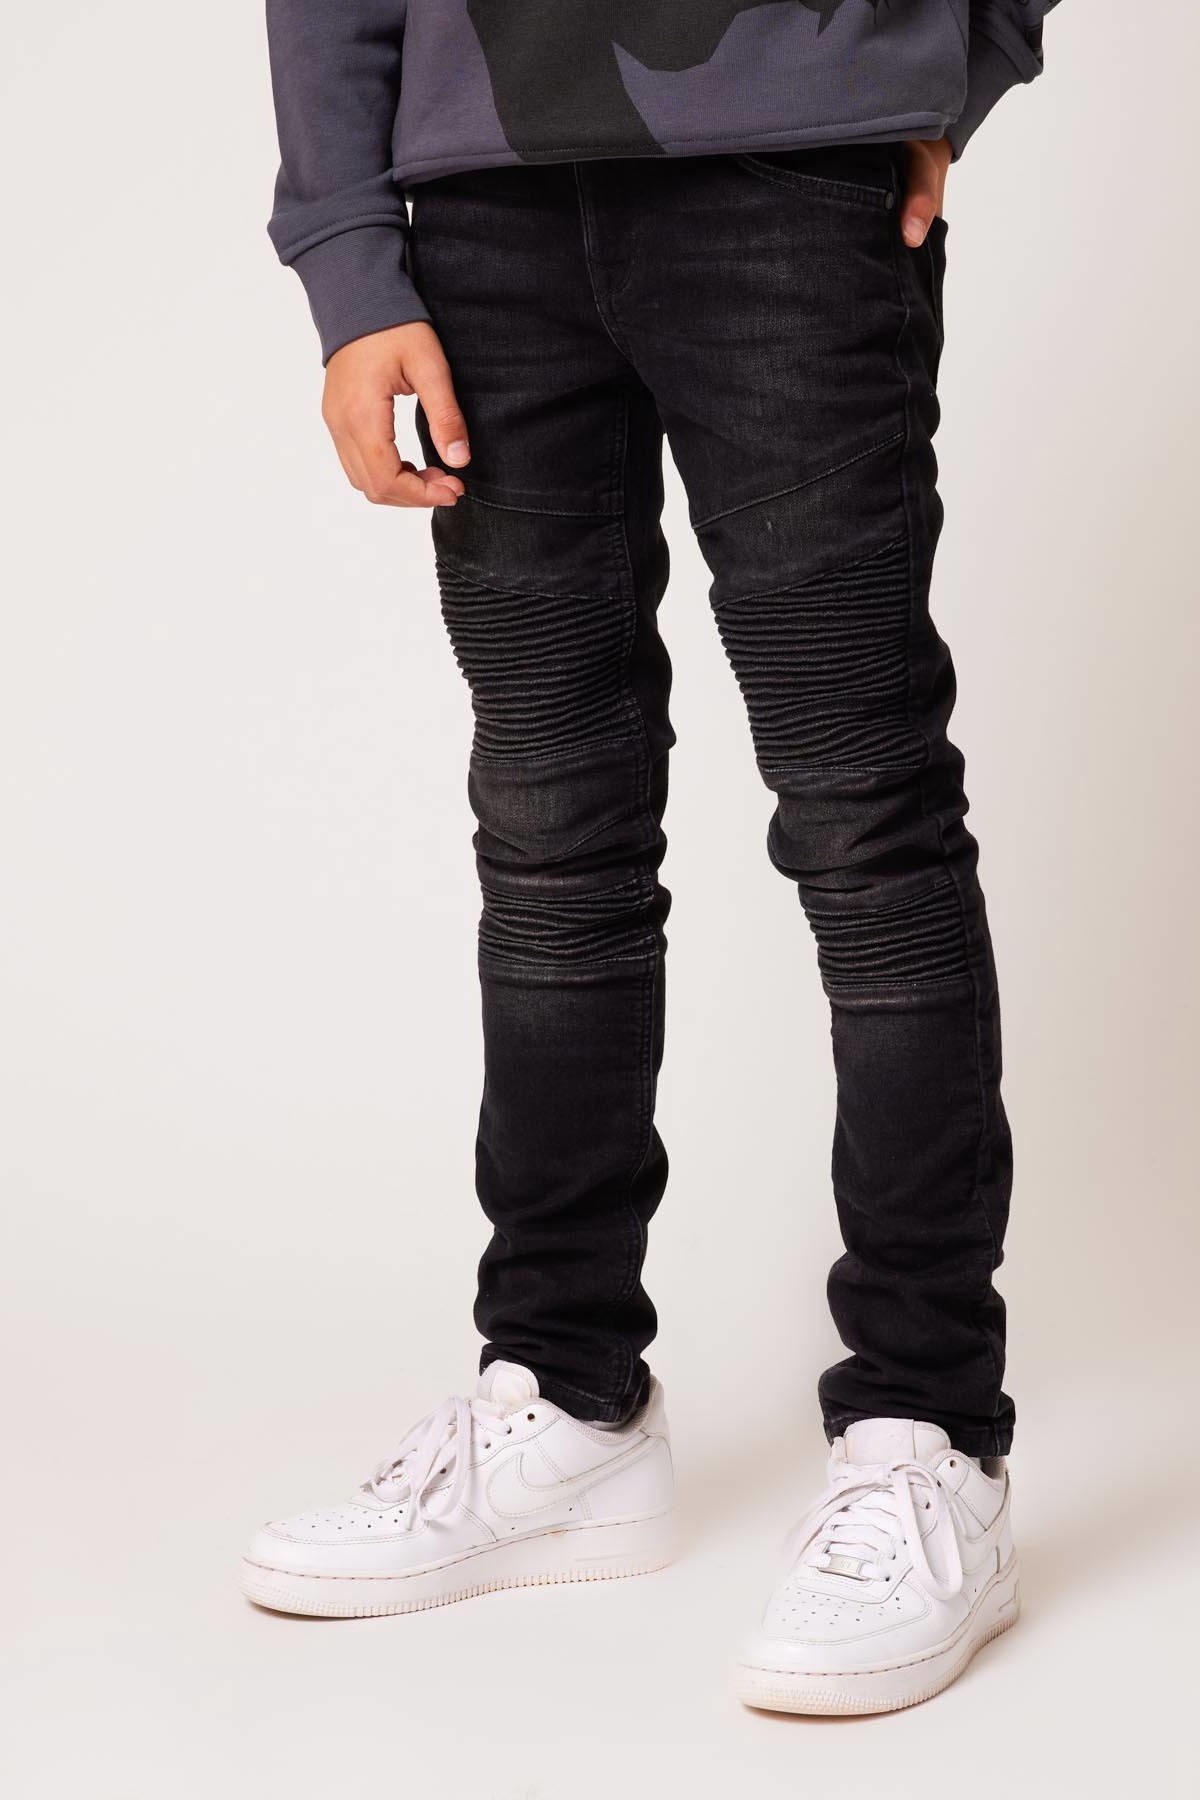 Boer Oswald spiegel CoolCat Junior skinny jeans Koen black | wehkamp